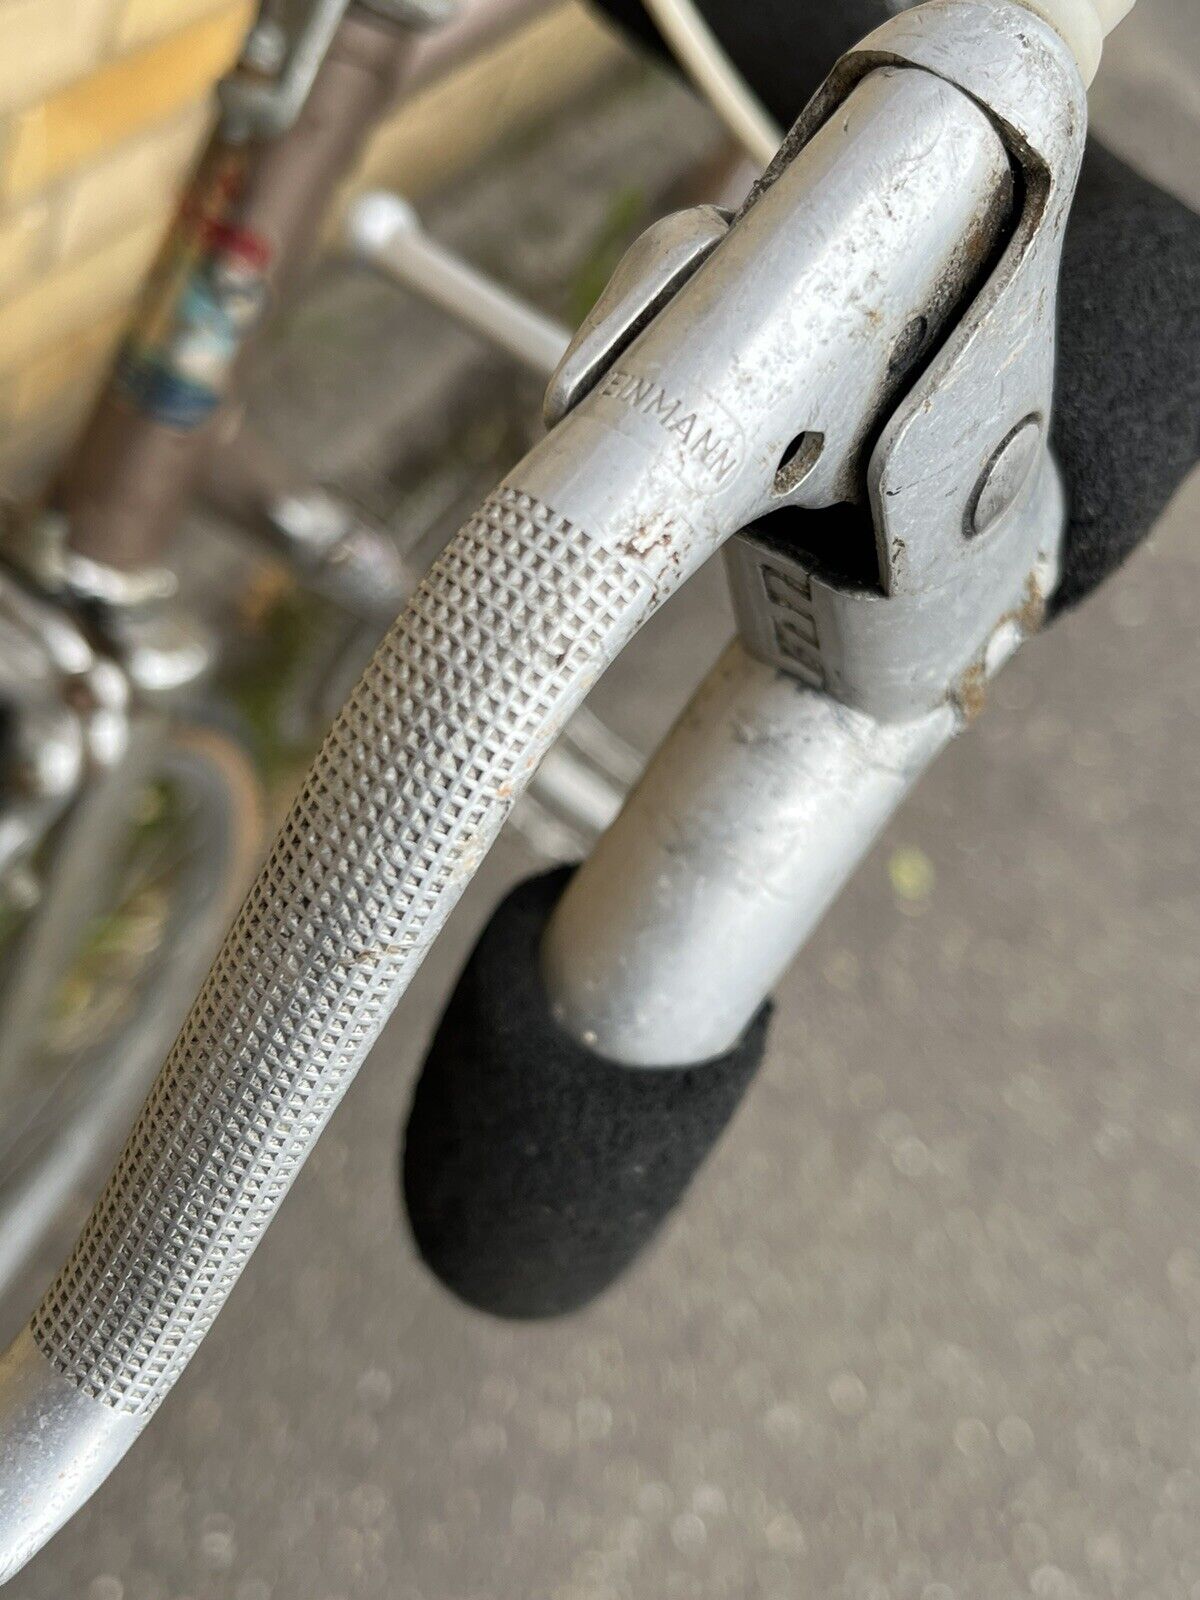 Vintage Falcon Ernie Clements Bike